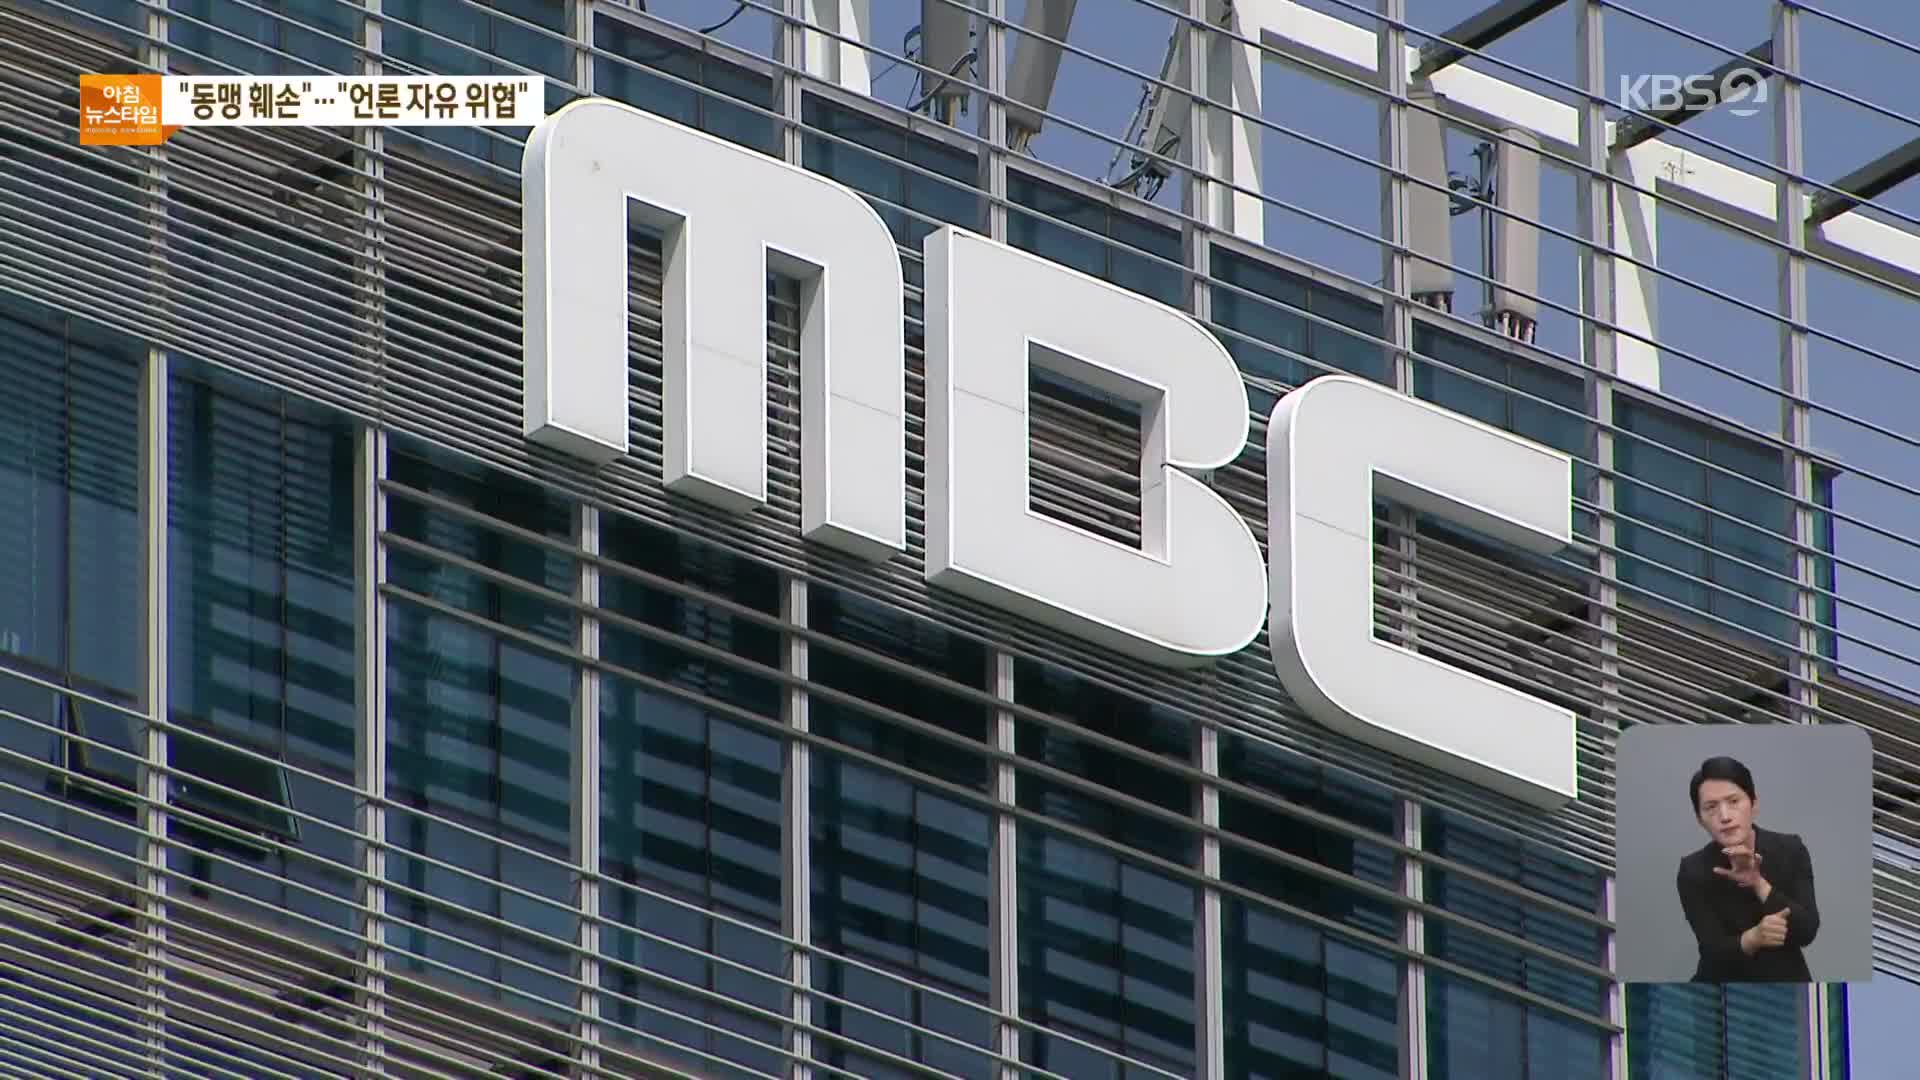 대통령실, “동맹관계 훼손” 공문…MBC “언론자유 위협”